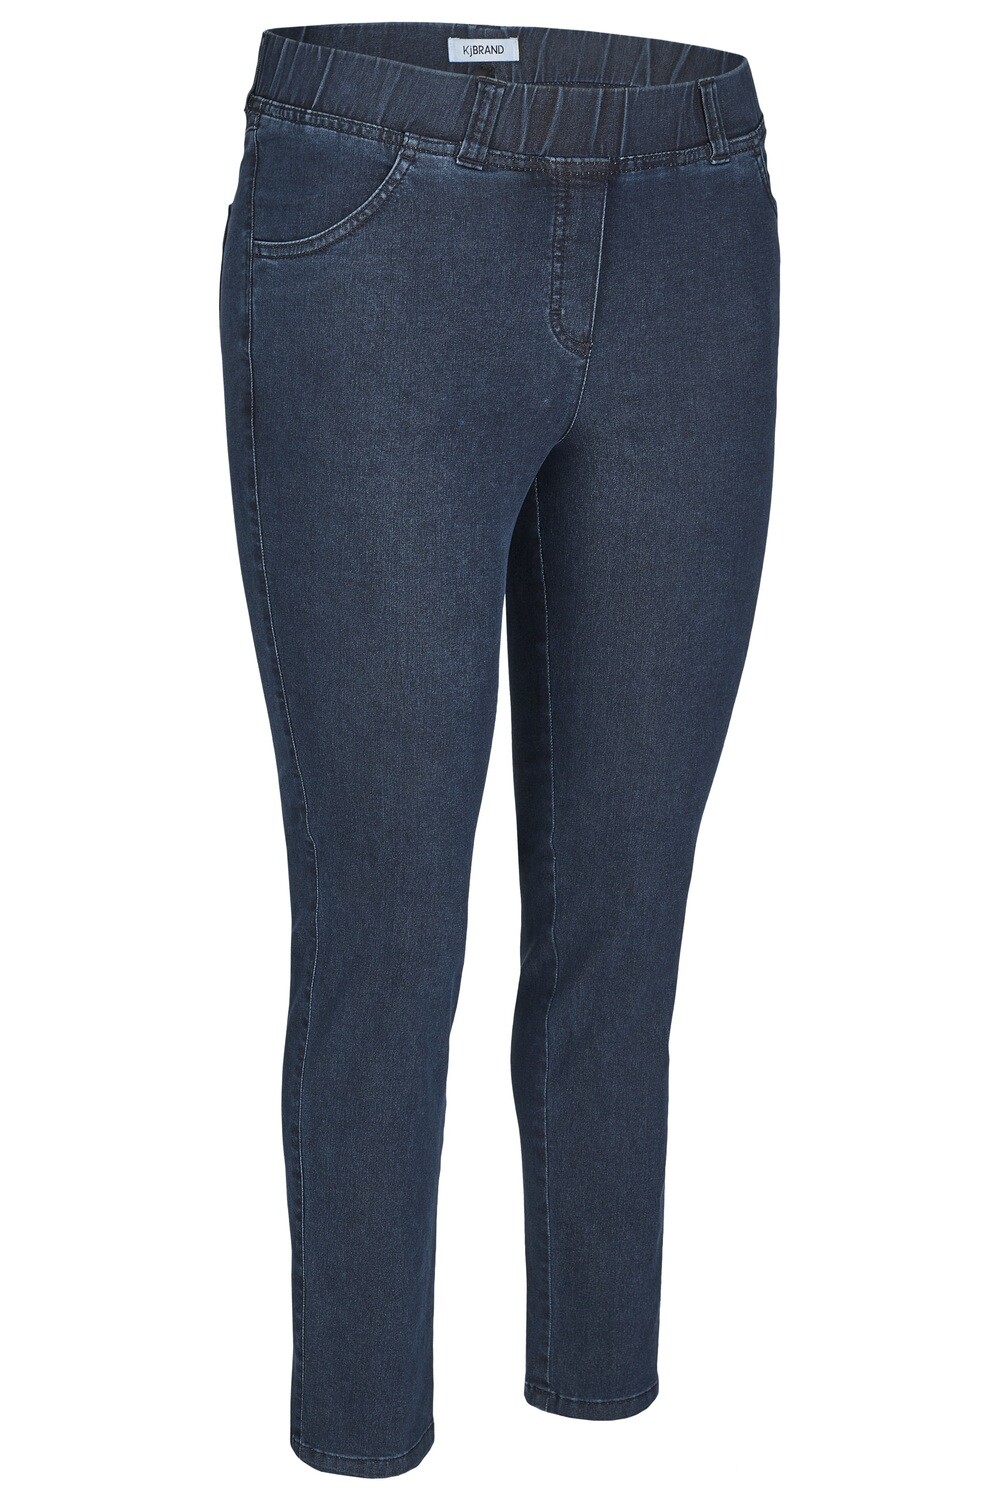 KJ Brand Jeansbroek op elastiek, Jenny model, aansluitend model